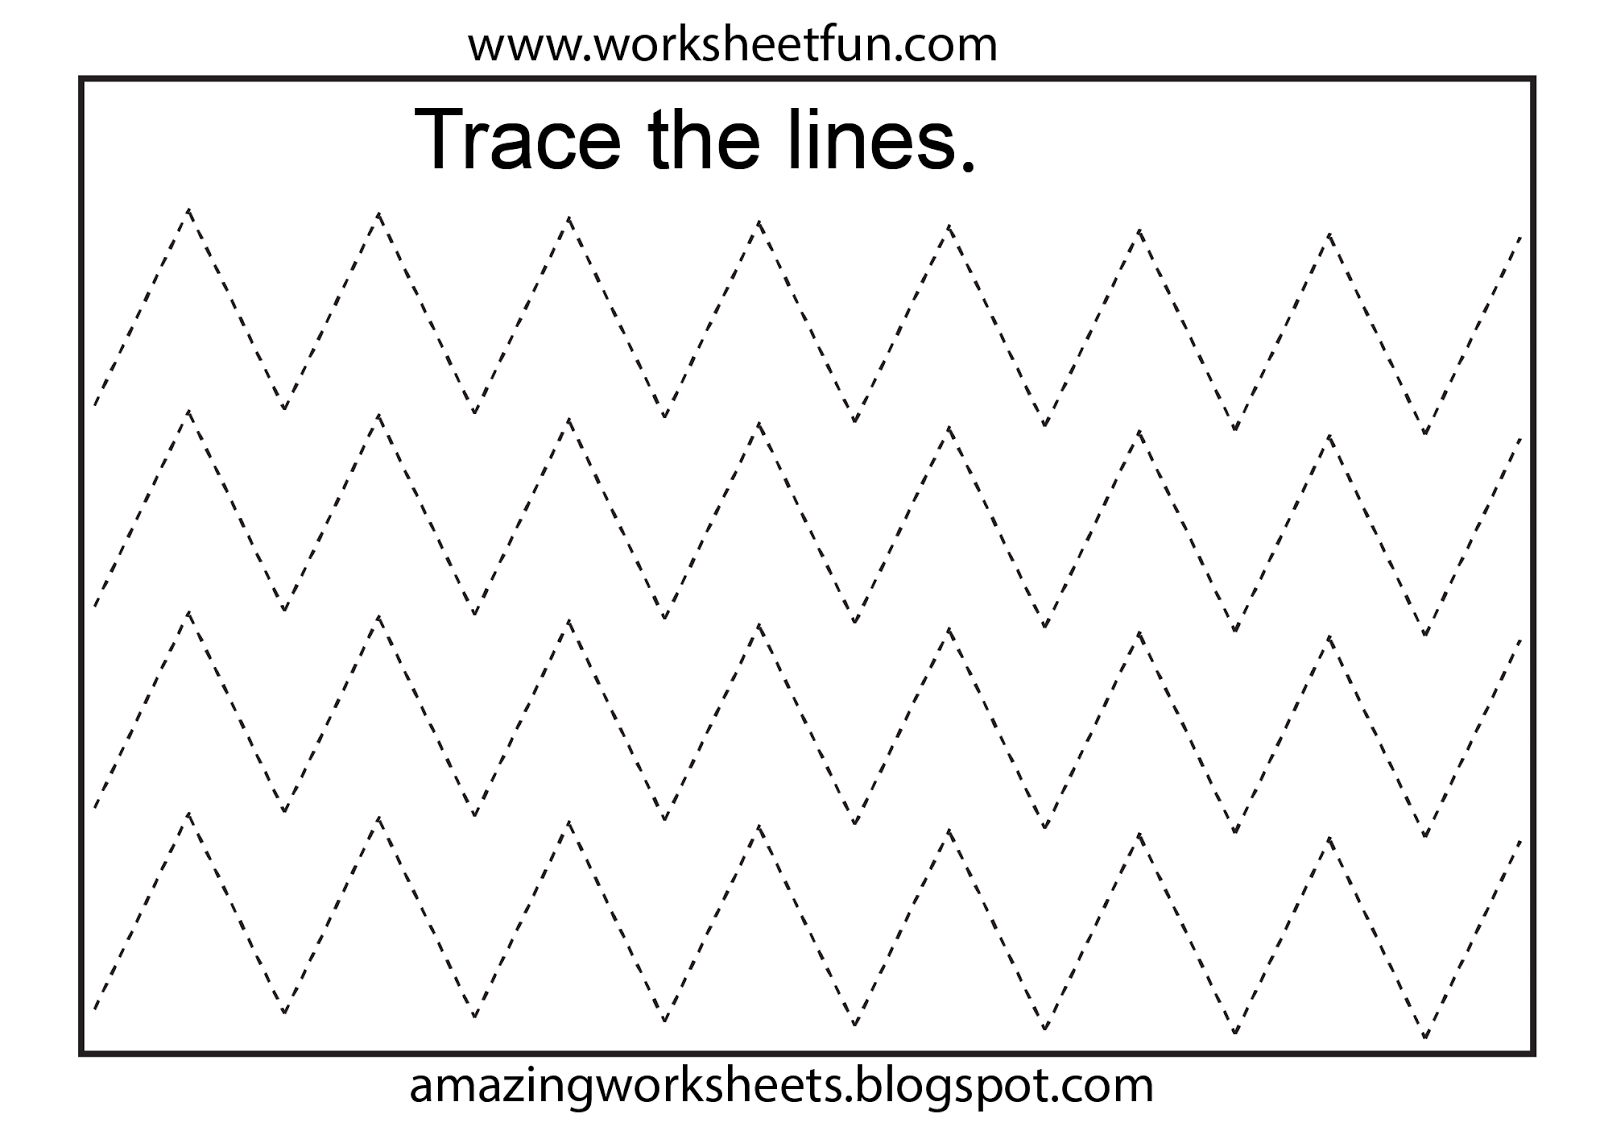 Worksheetfun - Free Printable Worksheets | Toddler Worksheets - Free Printable Preschool Worksheets Tracing Lines